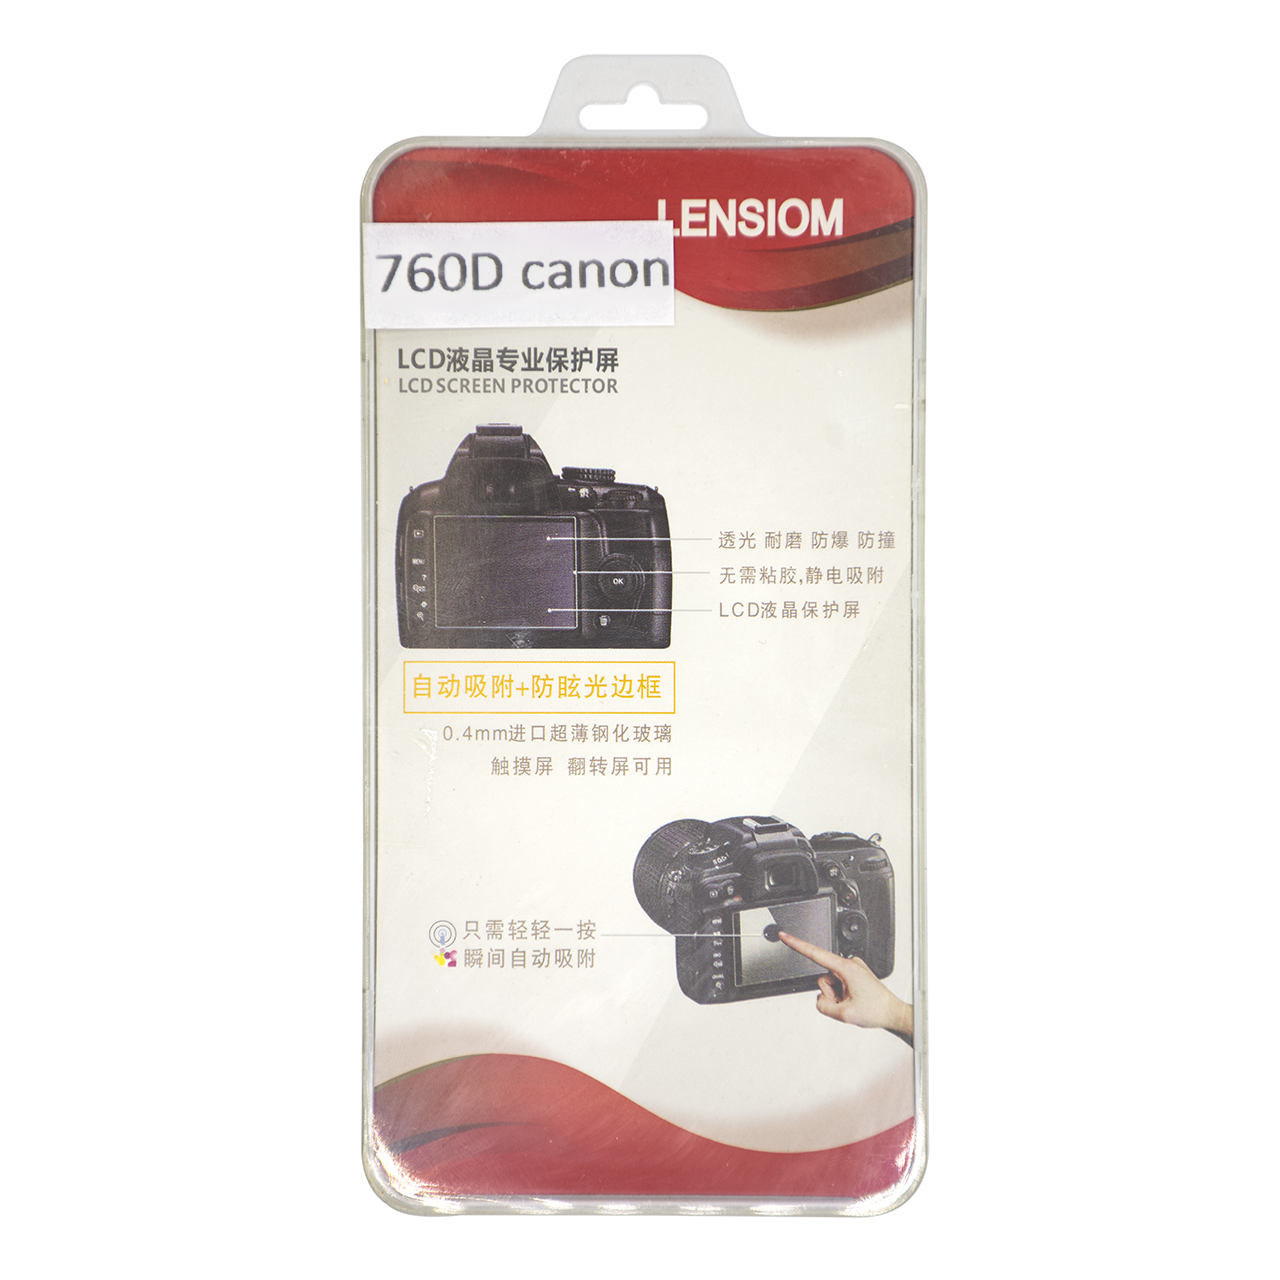 محافظ صفحه نمایش دوربین لنزیوم مدل L760D مناسب برای کانن 760D